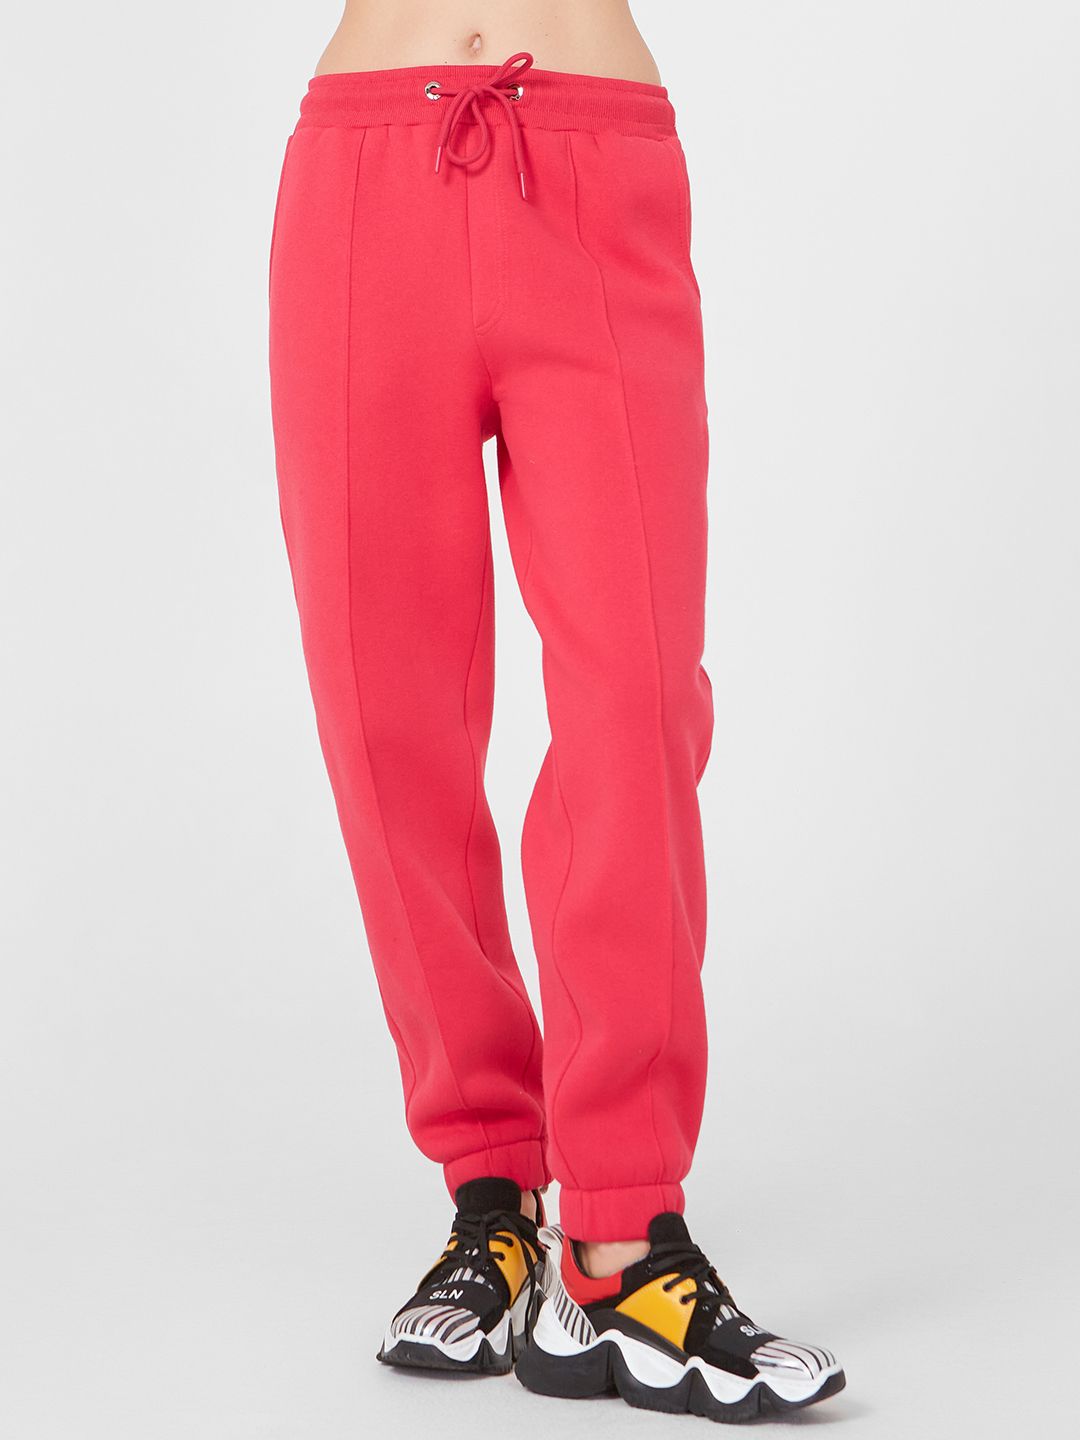 Спортивные брюки женские Lo 18232015 розовые 52 RU